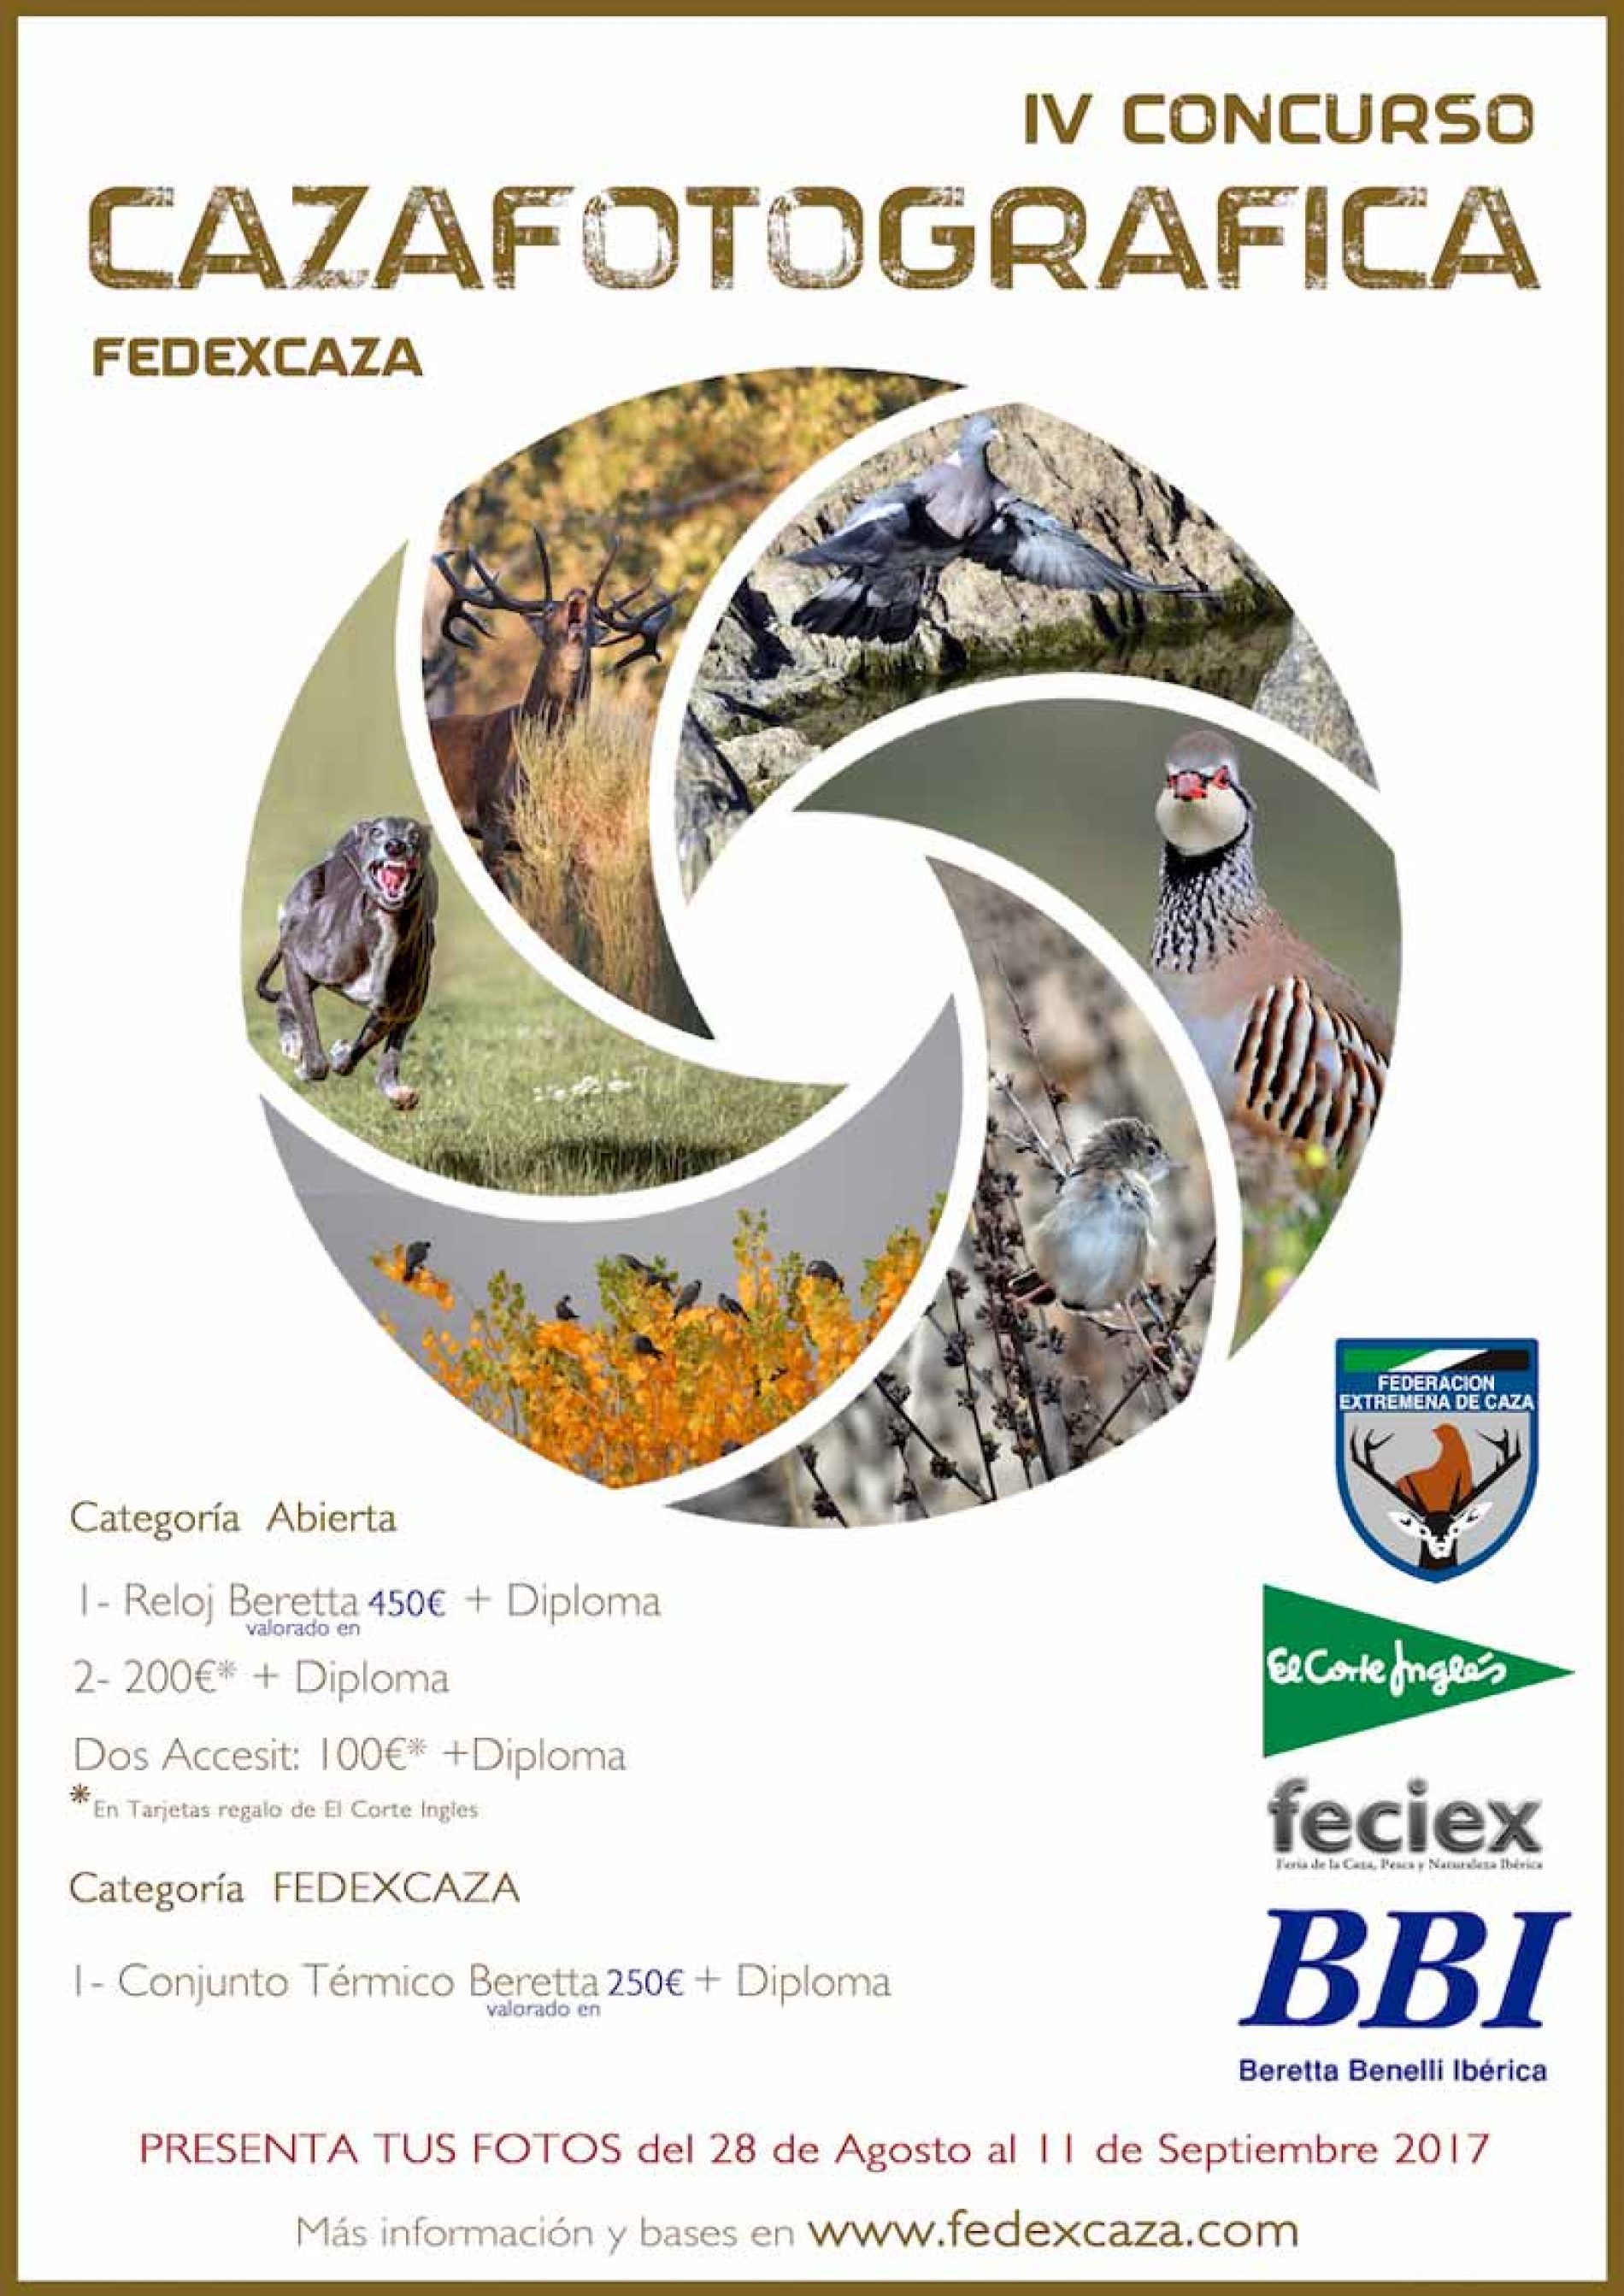 Cuarta edición del concurso Caza Fotográfica de FEDEXCAZA